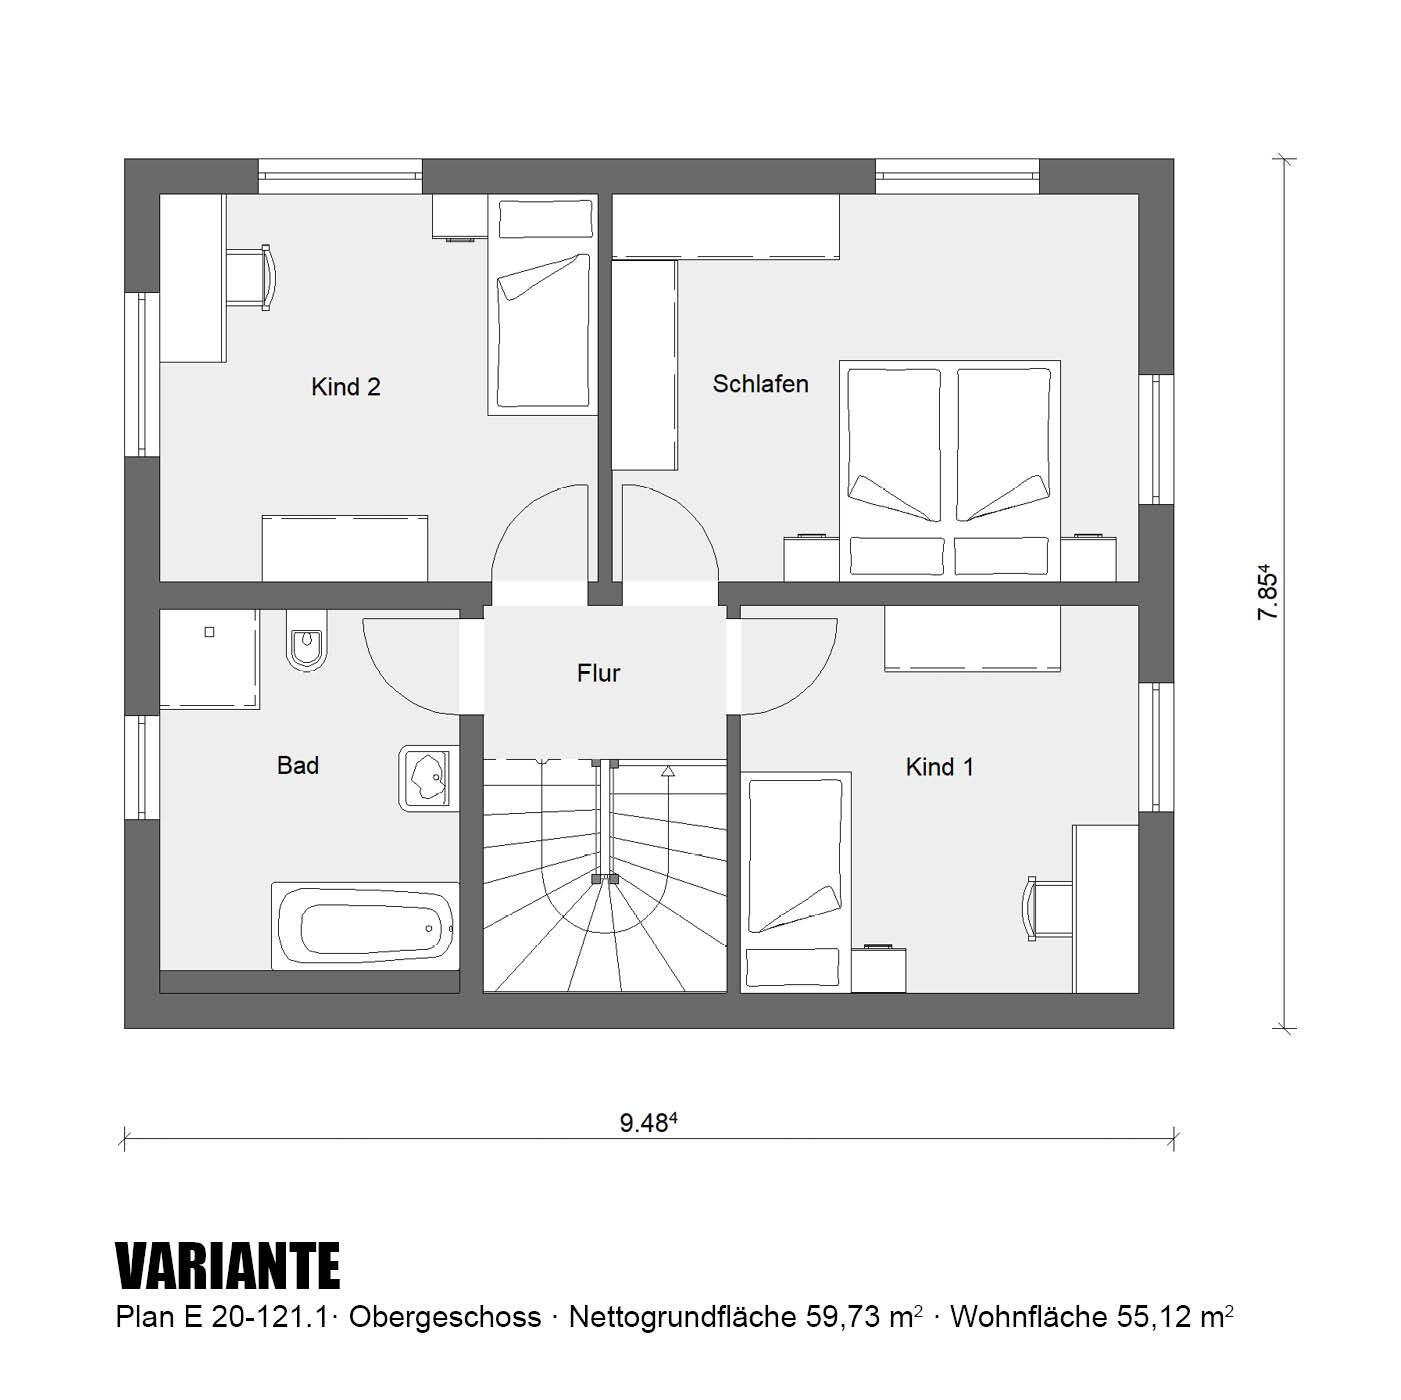 Aktionshaus-Obergeschoss-Variante-E20-121.1